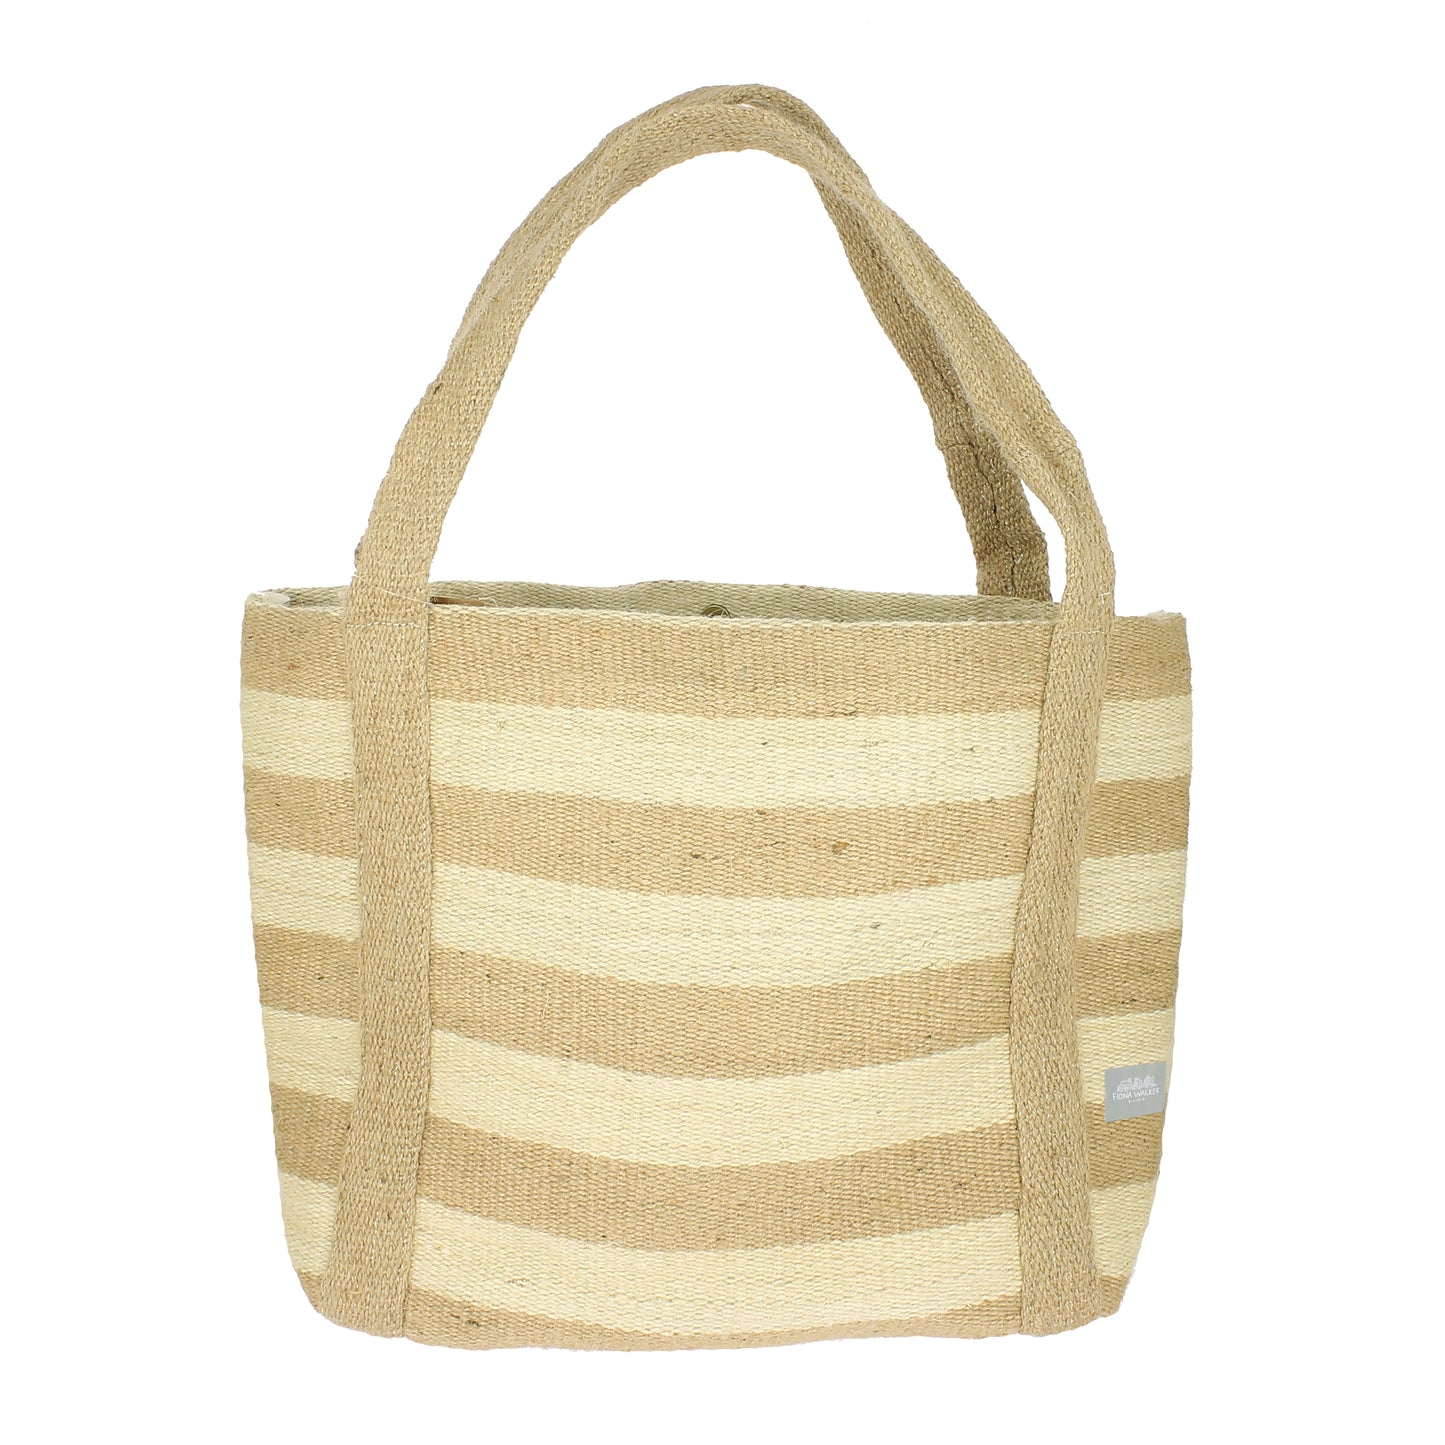 Jute Tote Bag - Natural and Cream Stripe